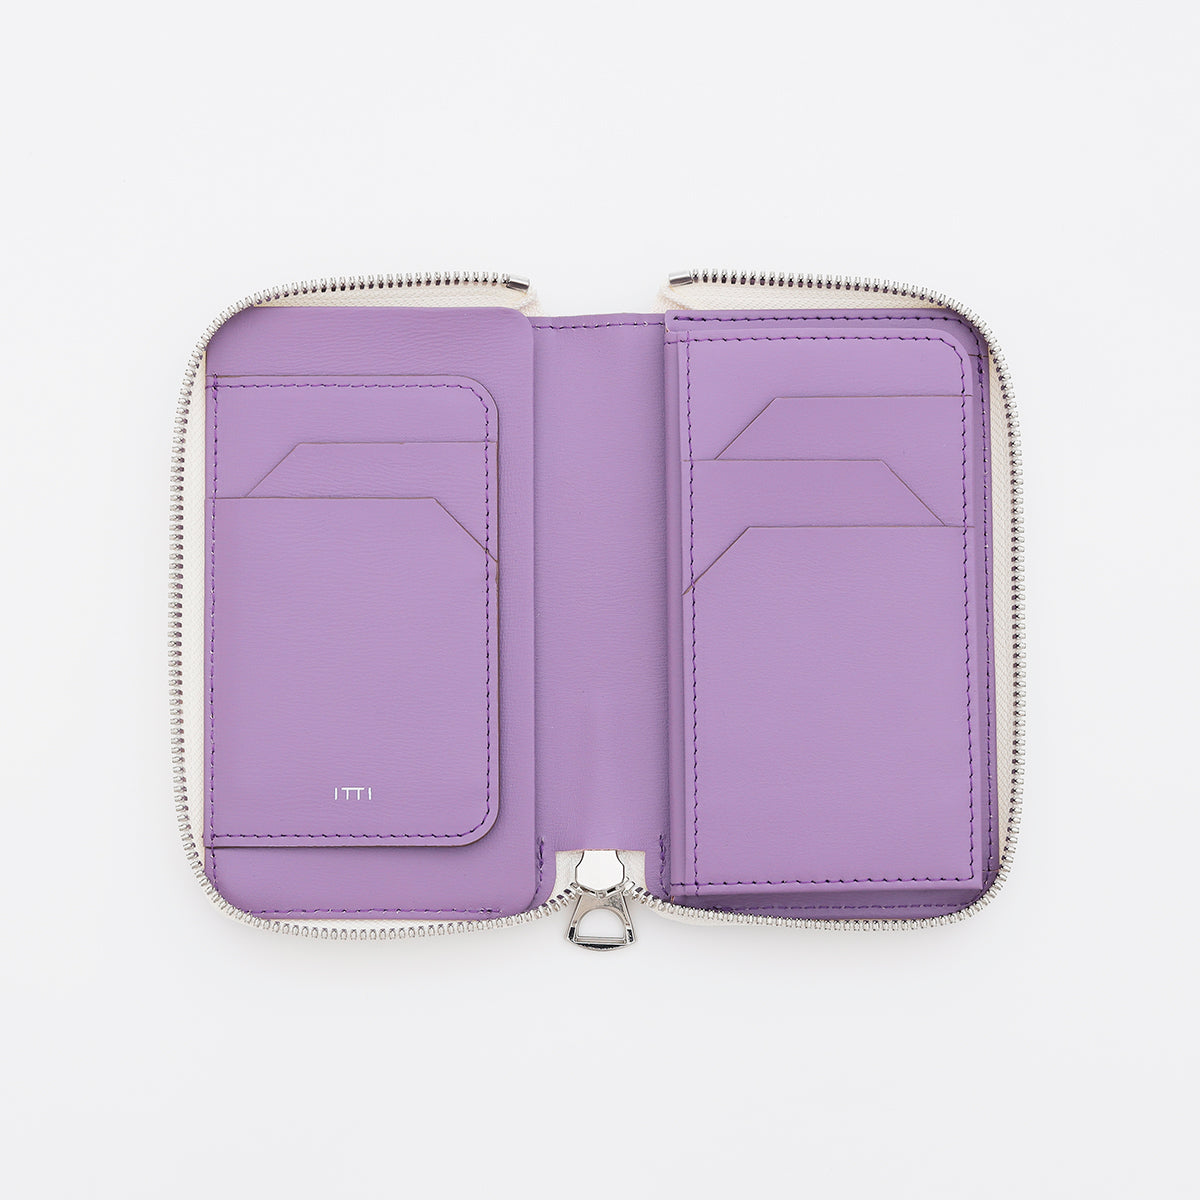 メンズ レディース コンパクト ミディアム財布 サイフ さいふ レザー ブランド ビジネス 本革 ラベンダー 紫